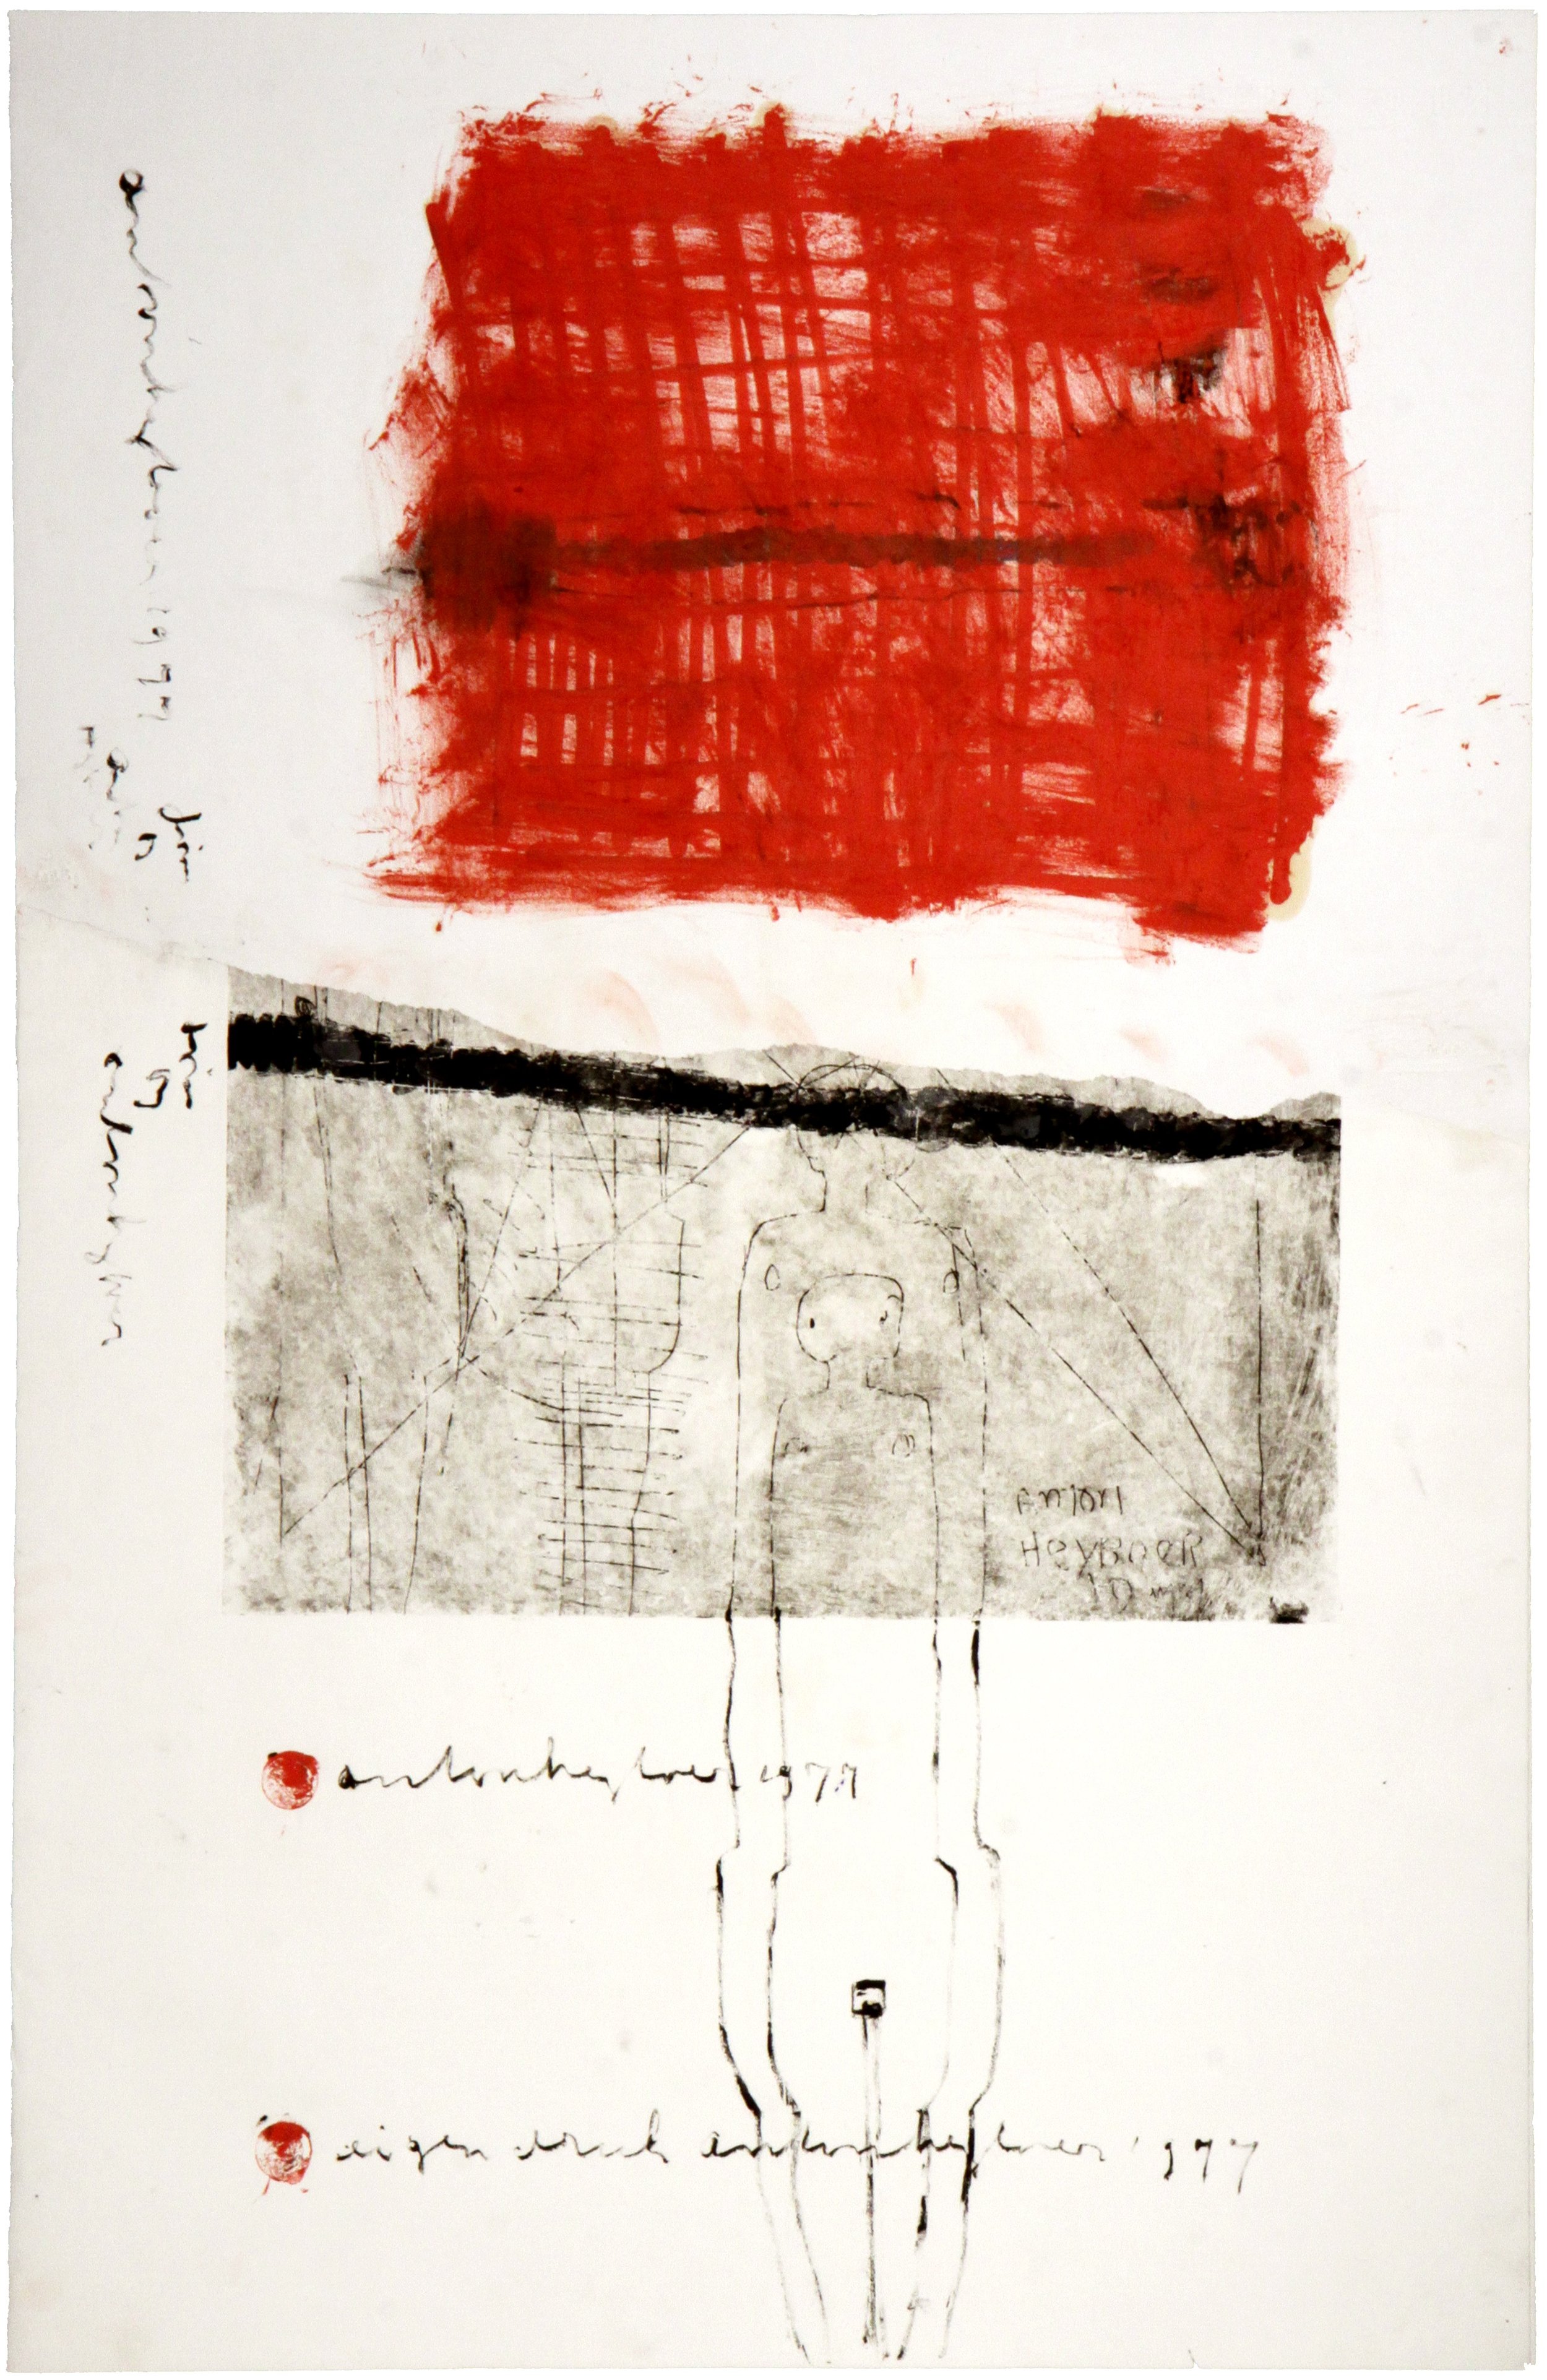 Anton Heyboer, Eenheid, 1977, Ets-collage op papier, 65 x 100 cm, collectie kunstenaar